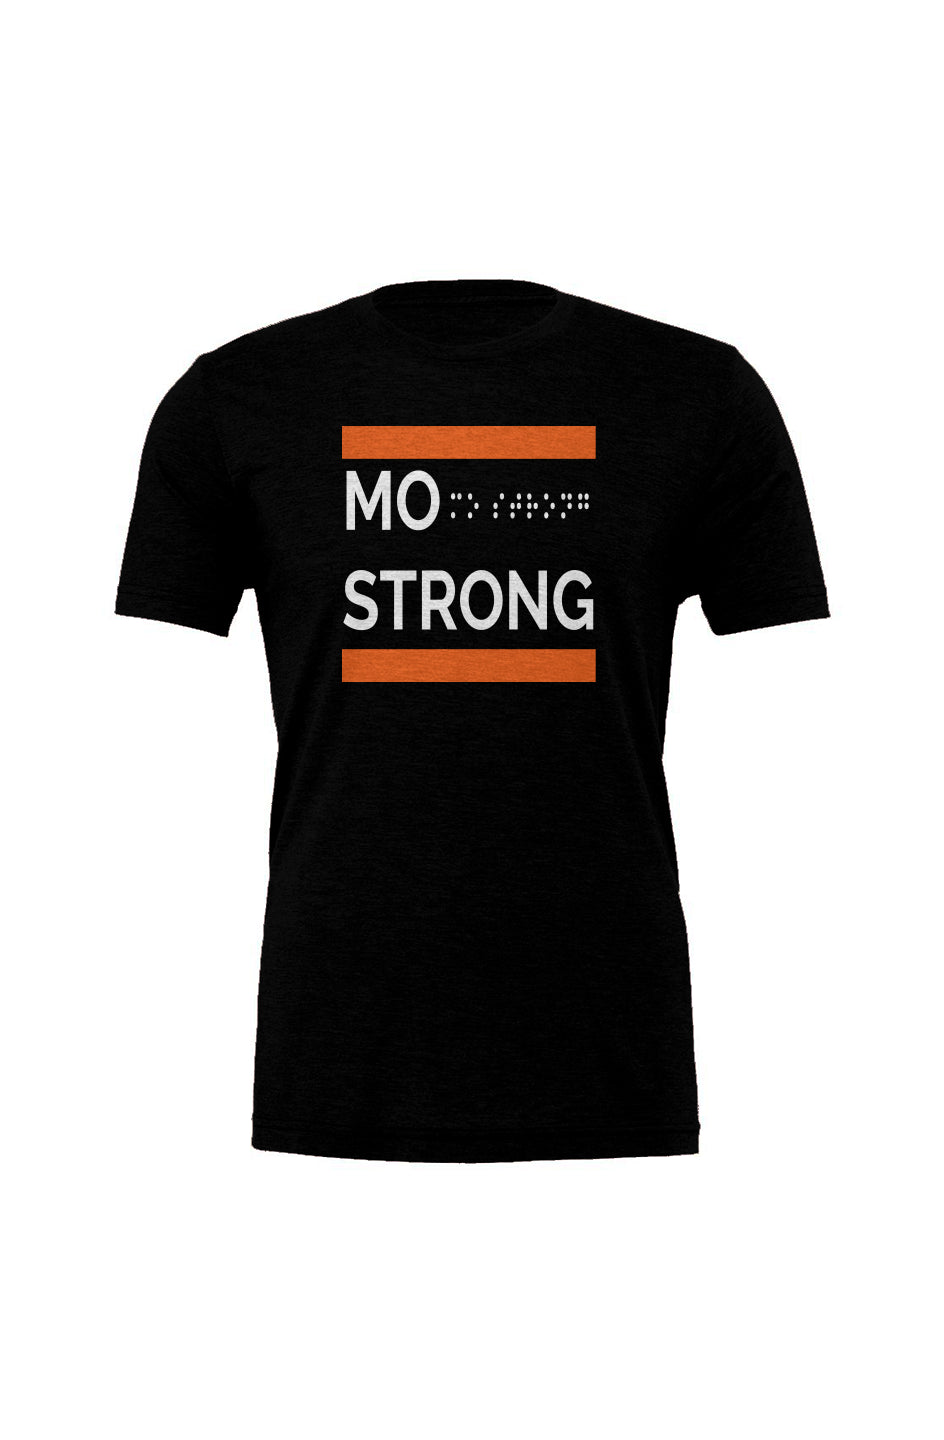 Mo Strong (Black/Orange)